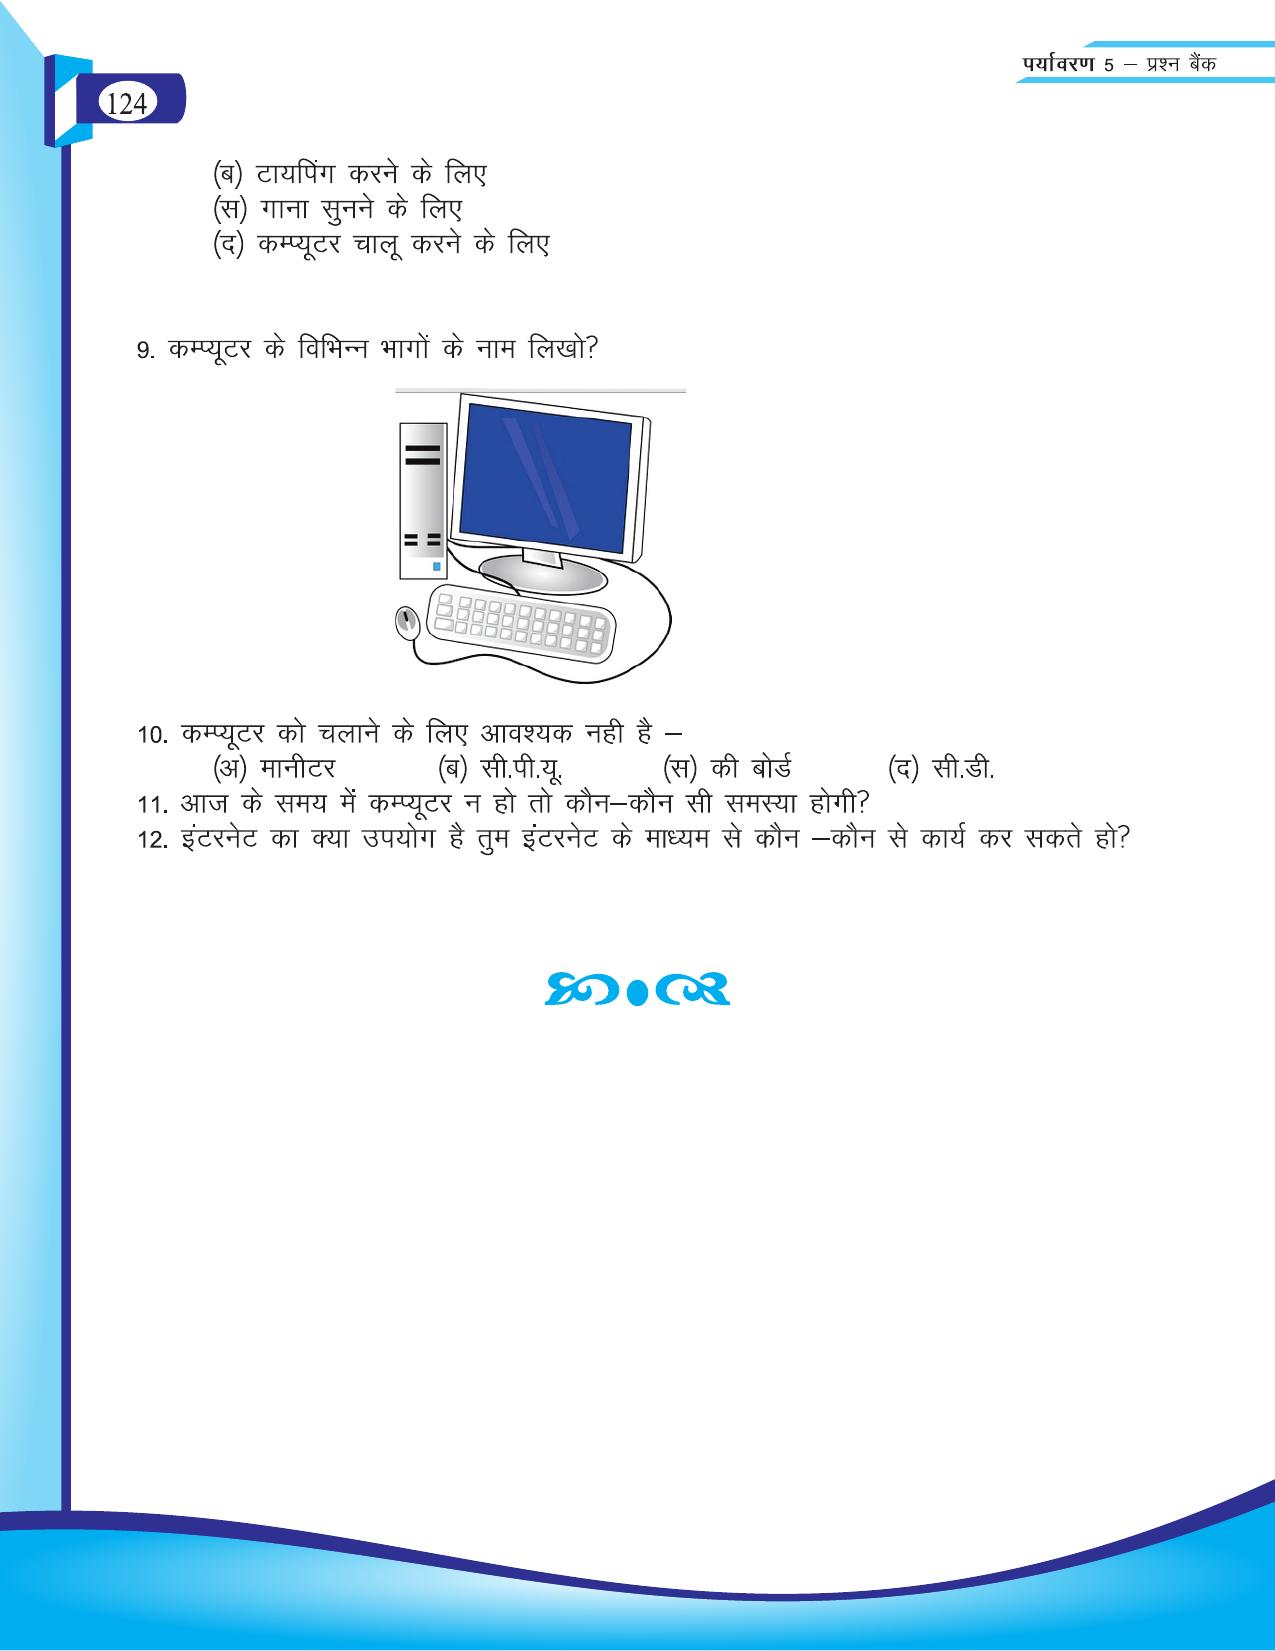 Chhattisgarh Board Class 5 EVS Question Bank 2015-16 - Page 50